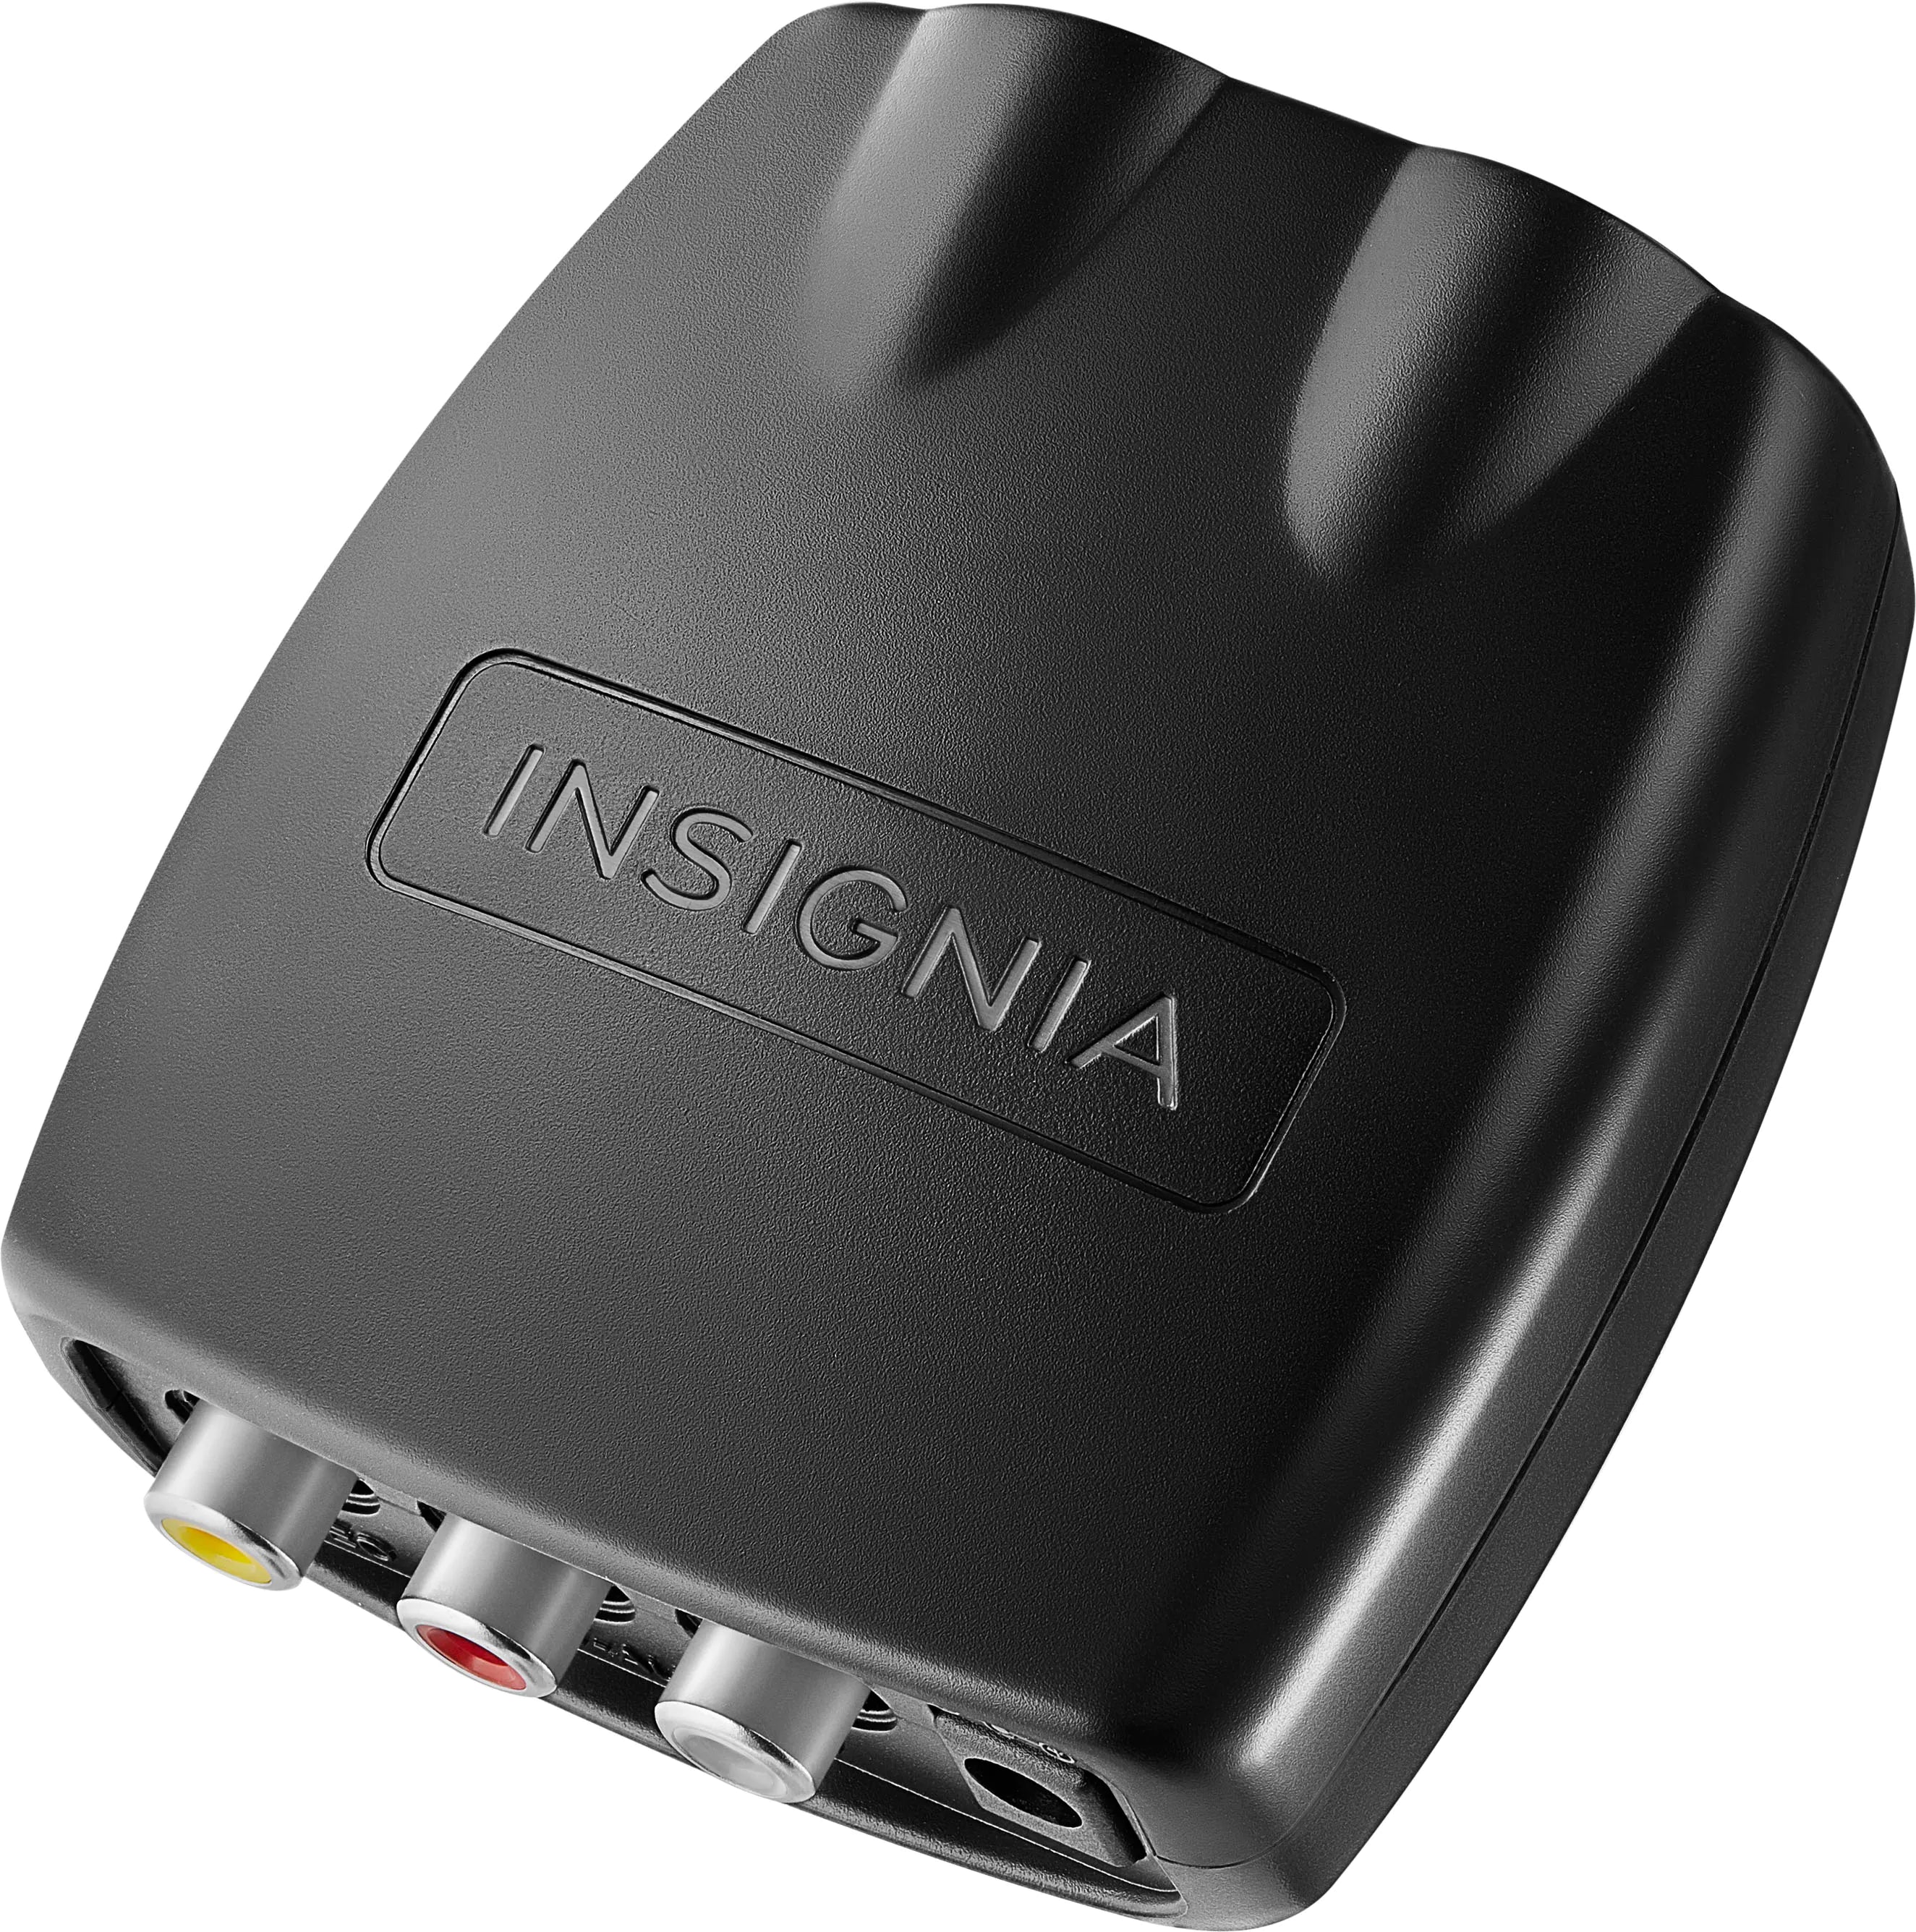  Insignia HDMI-to-VGA Adapter, Model: NS-PG95503, Black